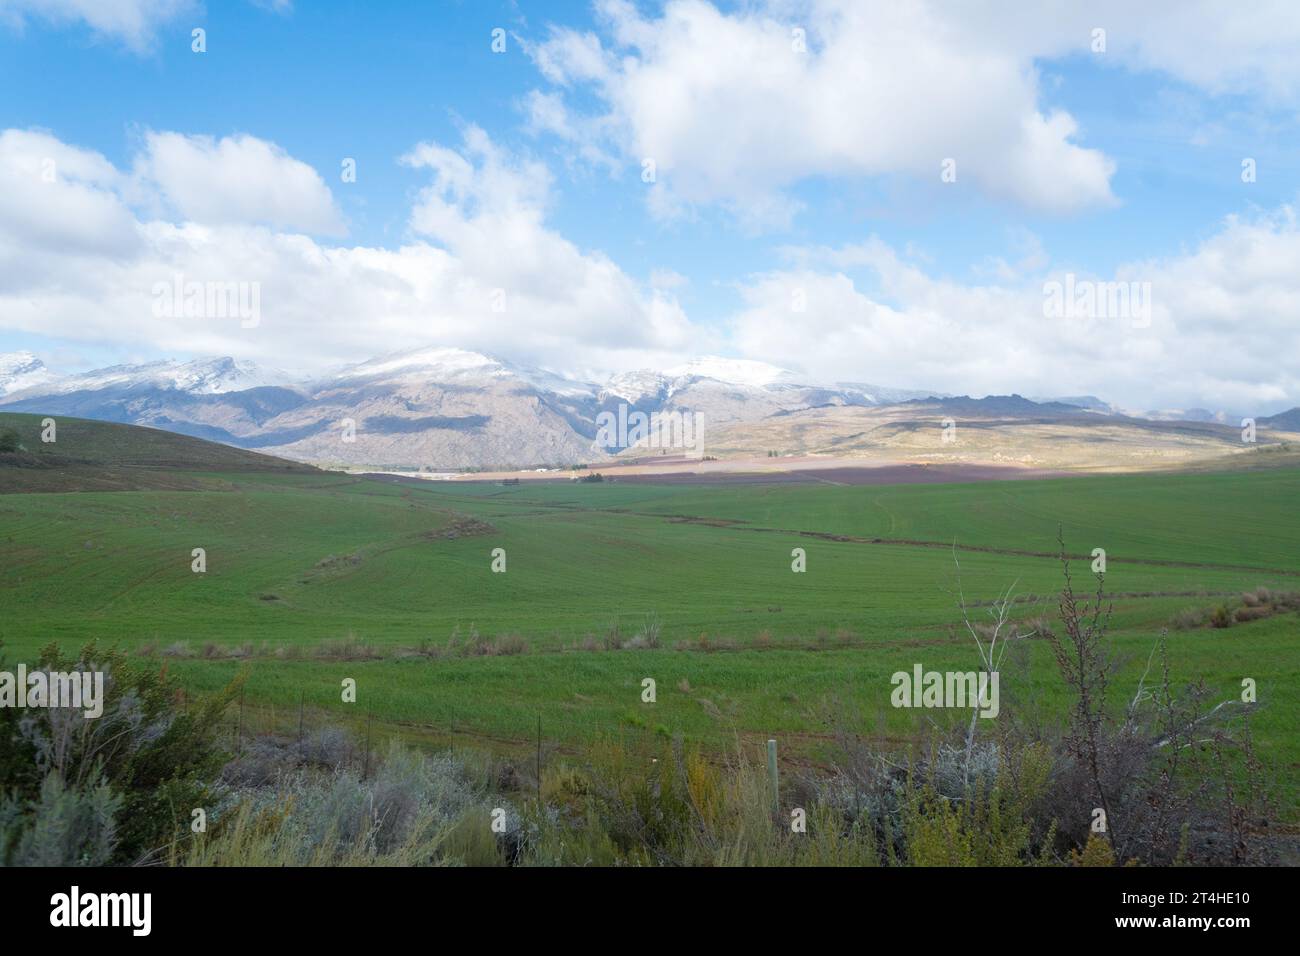 Paesaggio agricolo invernale, vista panoramica su una valle e montagne innevate a Cerere, Capo Occidentale, concetto di agricoltura e agricoltura sudafricana Foto Stock